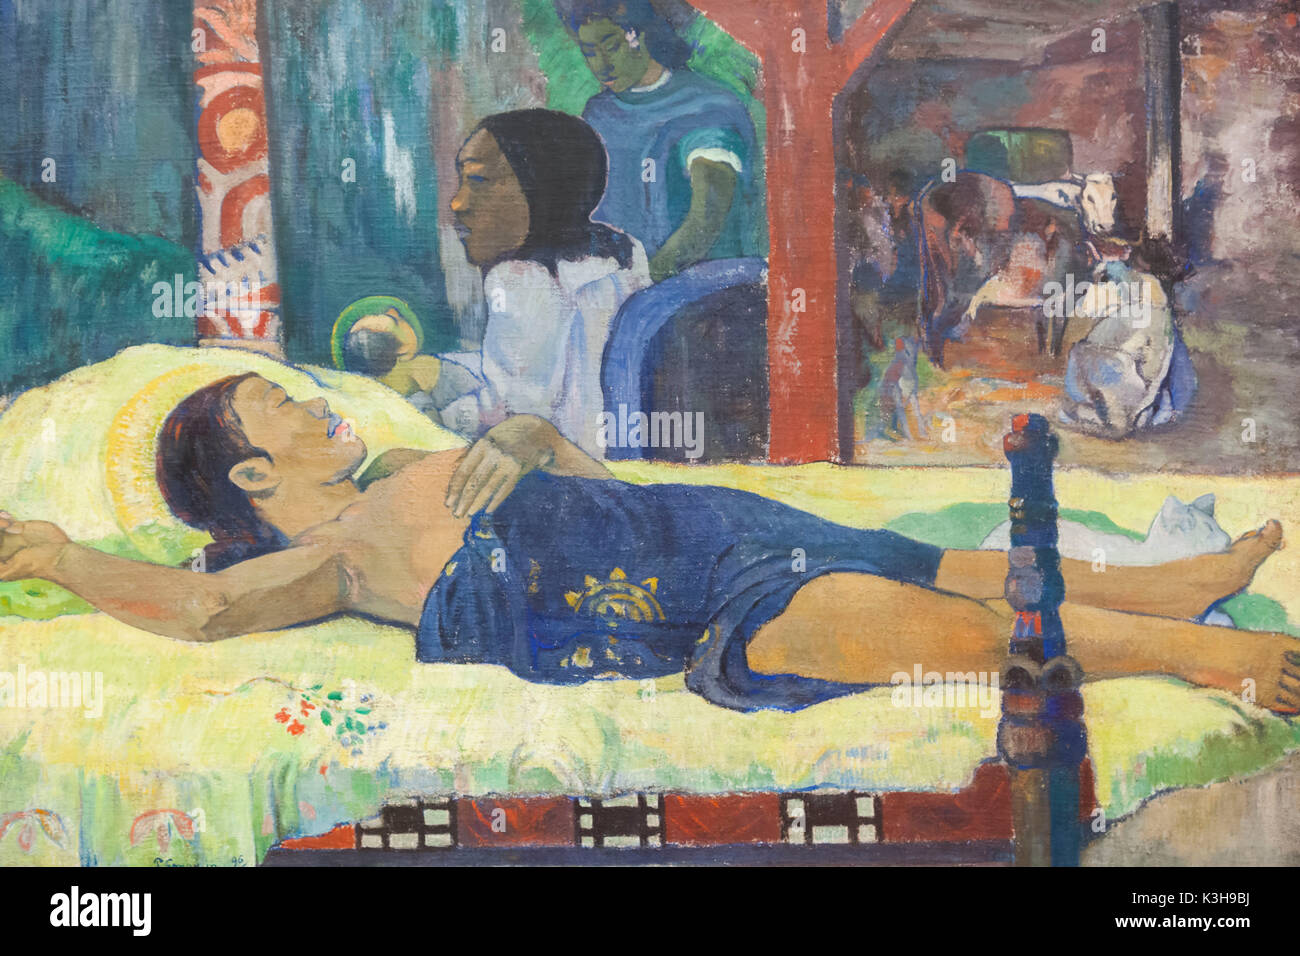 Germany, Bavaria, Munich, le nouveau musée Pinakothek (Neue Pinakothek), la peinture intitulée 'L'Birth-Te manari no atua" (Die Geburt-Te le tamari no atua) de Paul Gauguin datée 1896 Banque D'Images